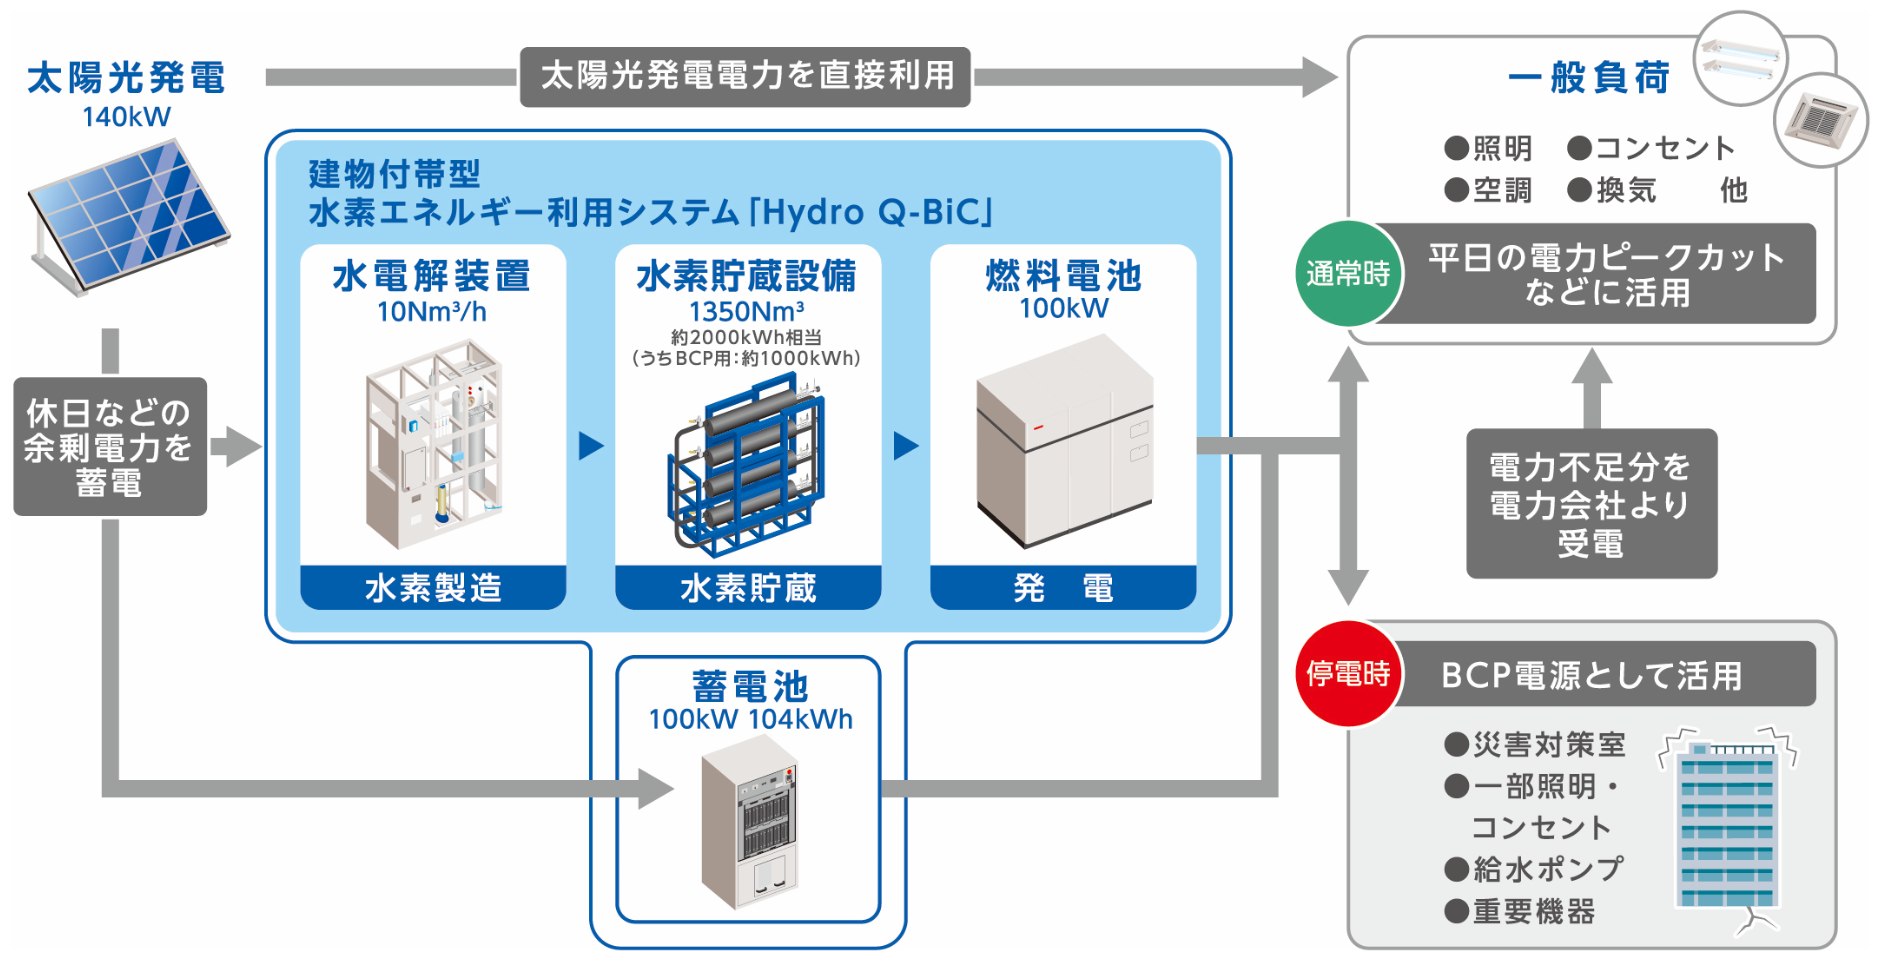 建物付帯型水素エネルギー利用システム「Hydro Q-Bic」の仕組み